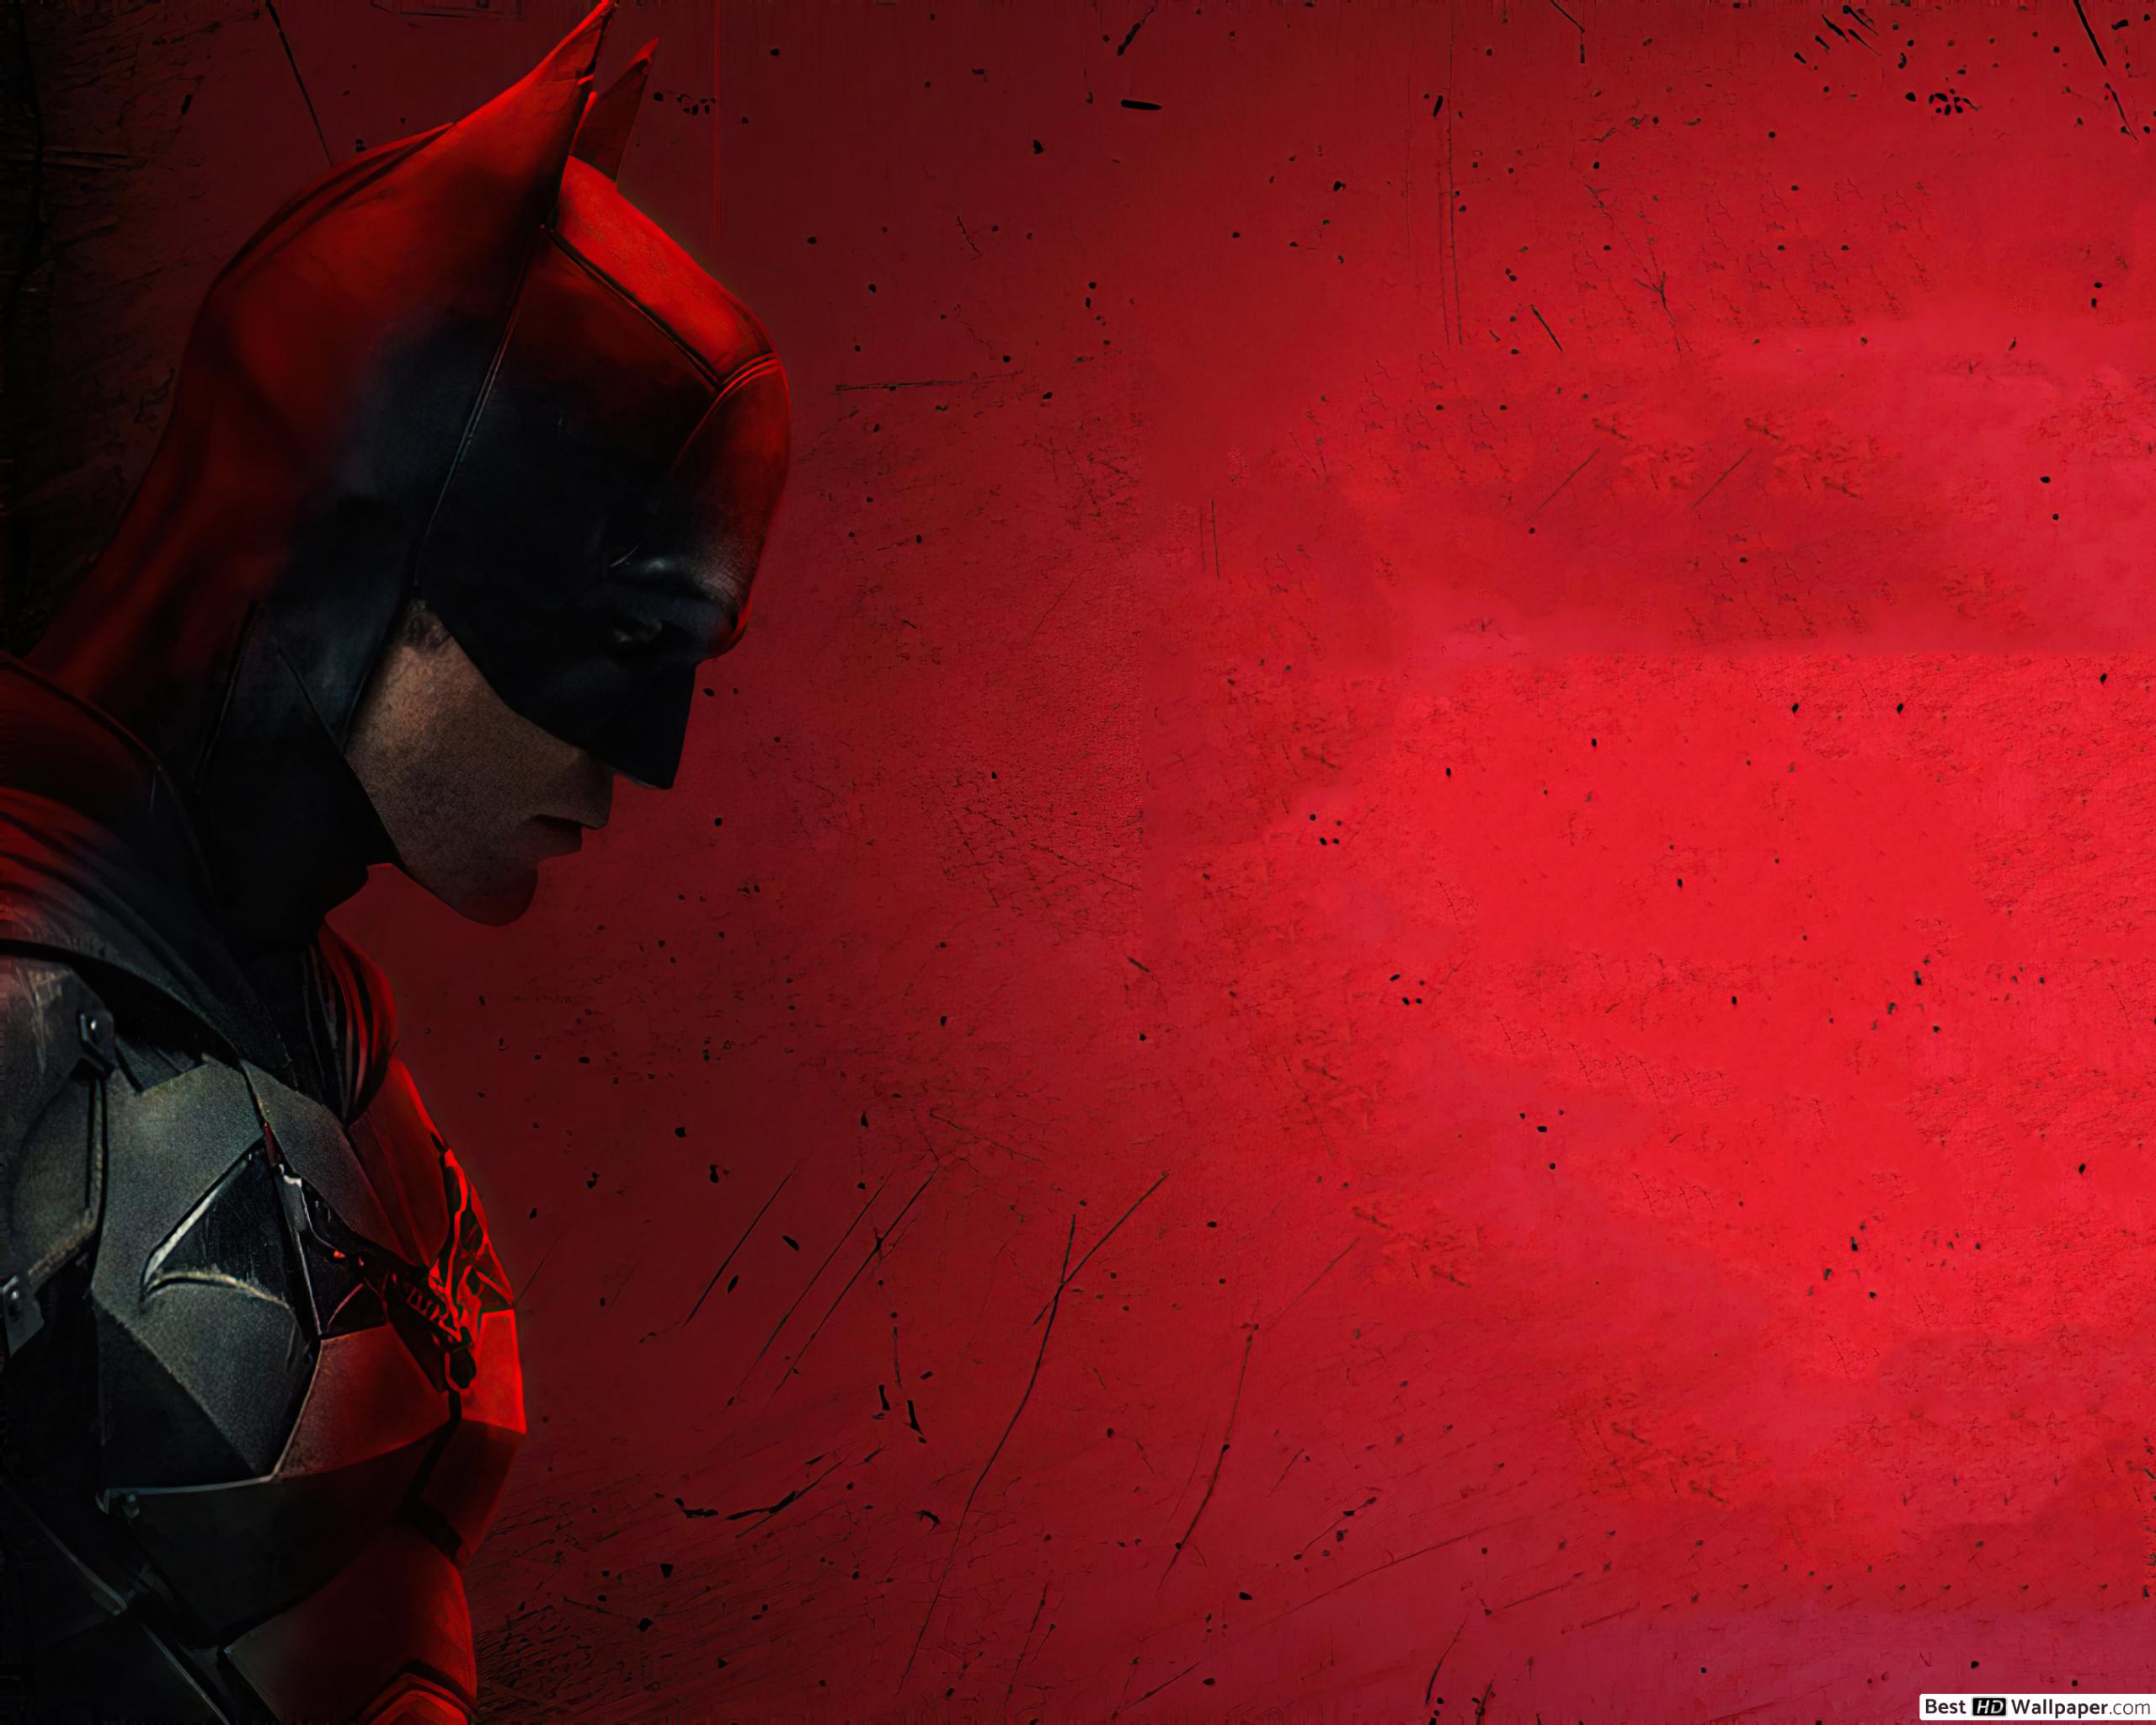 The Batman Live Wallpaper, Pc Wallpaper